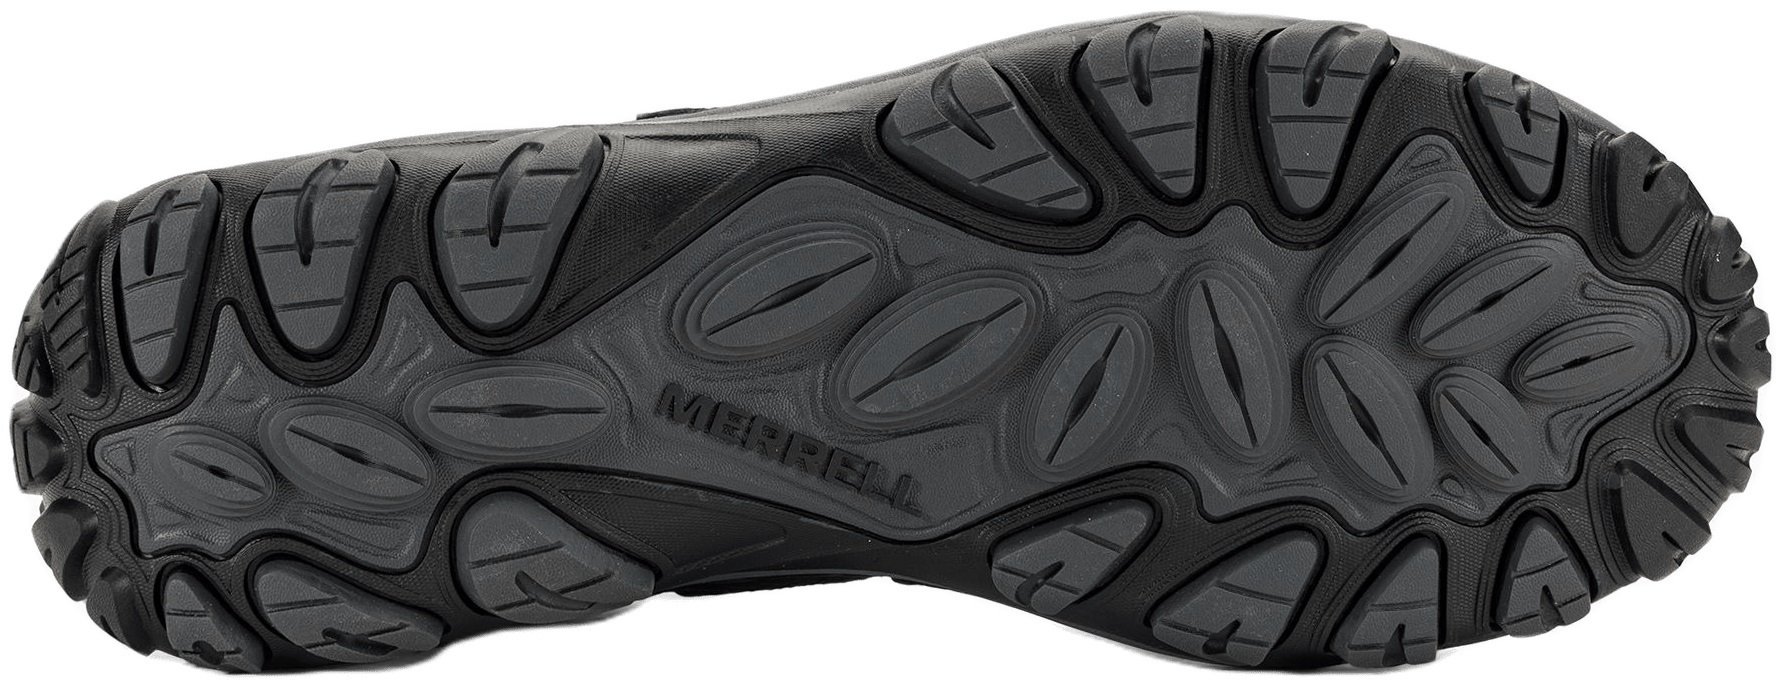 Ботинки мужские Merrell West Rim Sport MID GTX black 42 черный фото 5